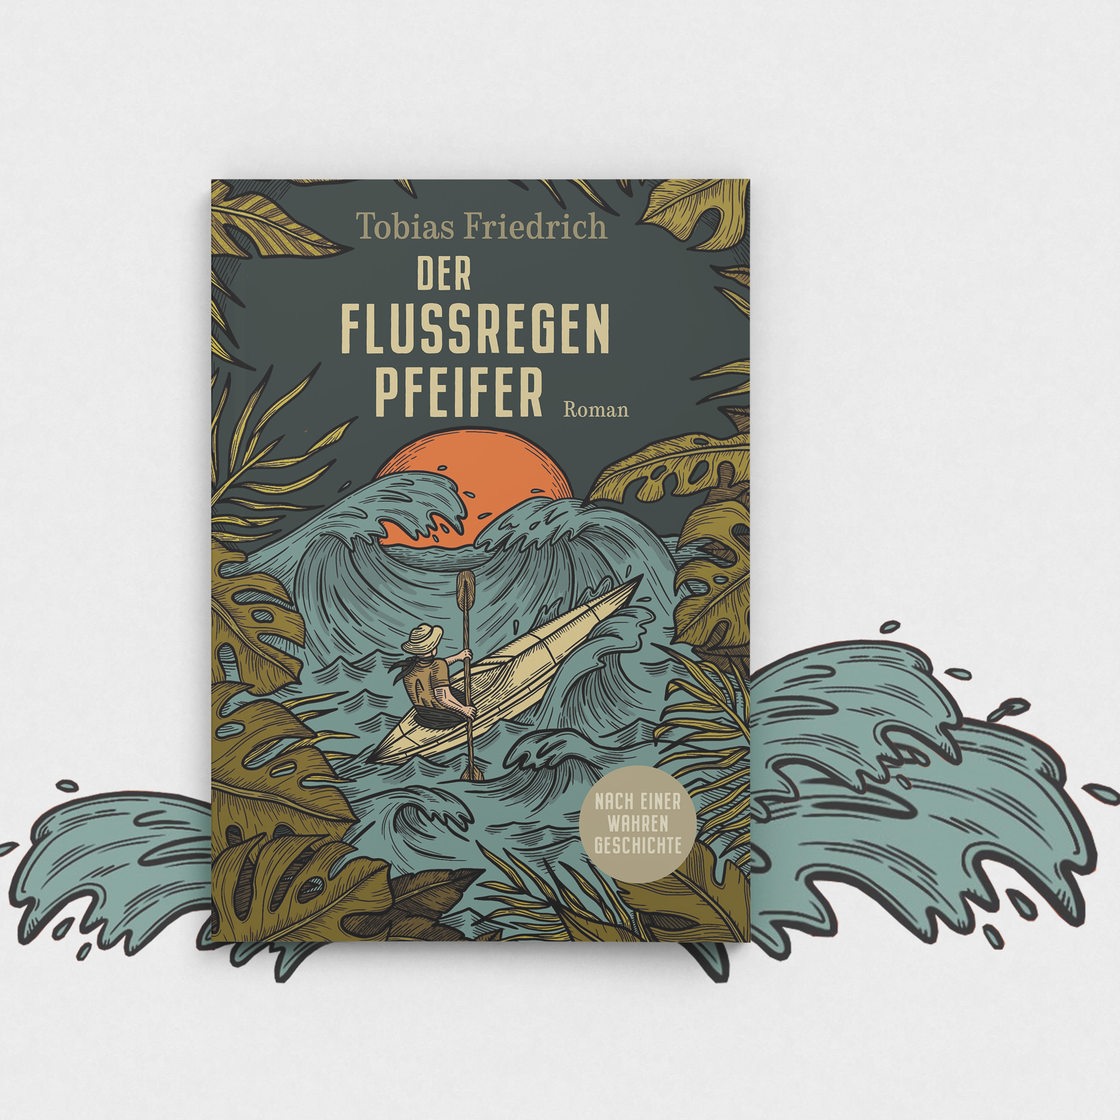 Buchcover Tobias Friedrich, "Der Flussregenpfeifer"